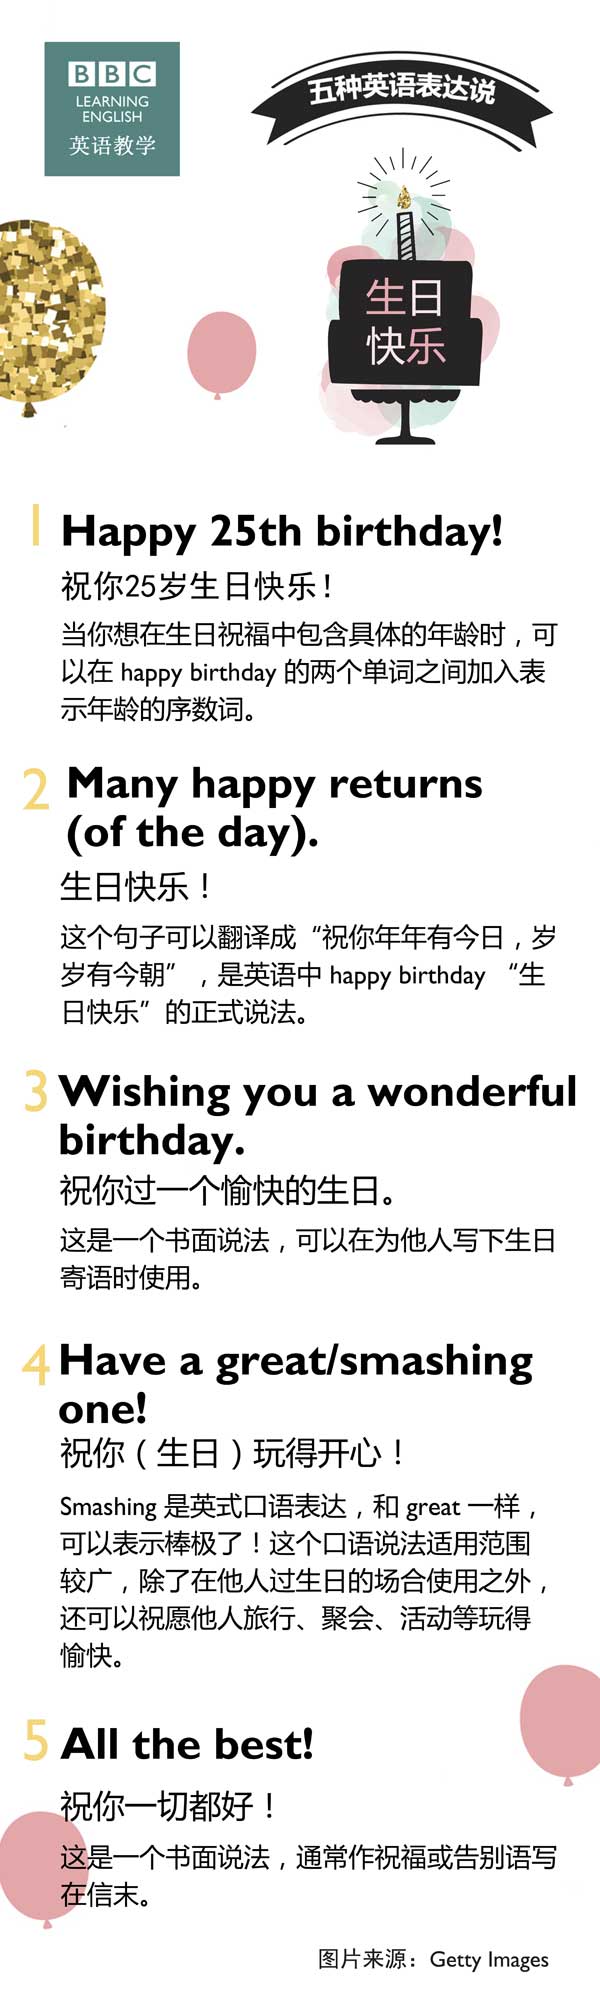 五种英语表达说“生日快乐”